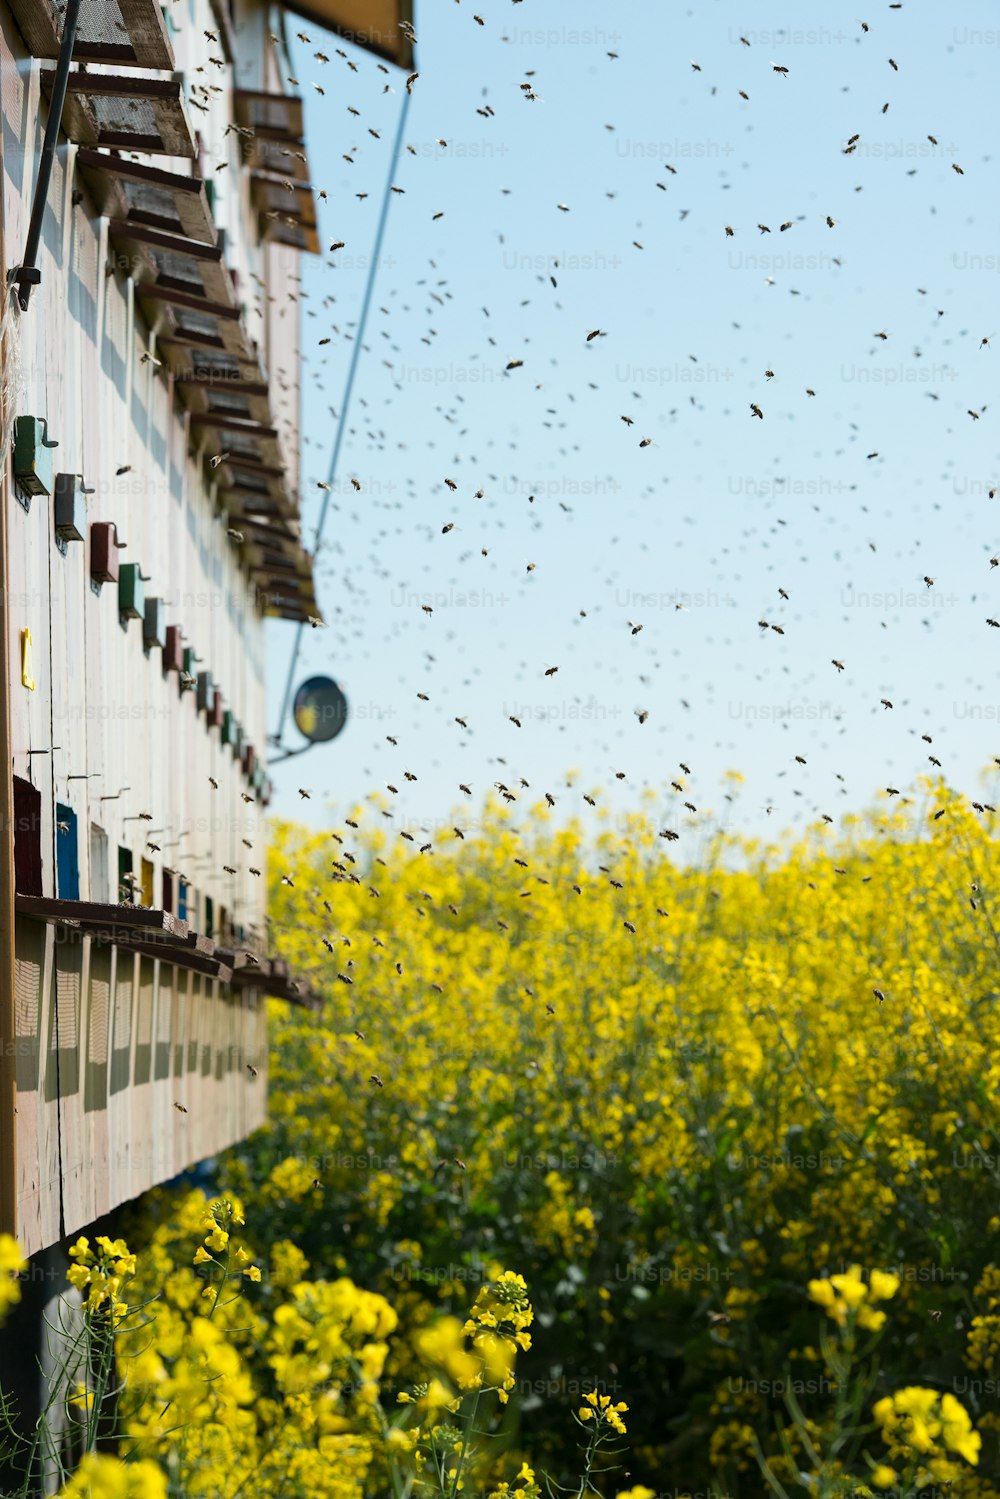 colmenas en los campos de colza y muchas abejas volando en el aire